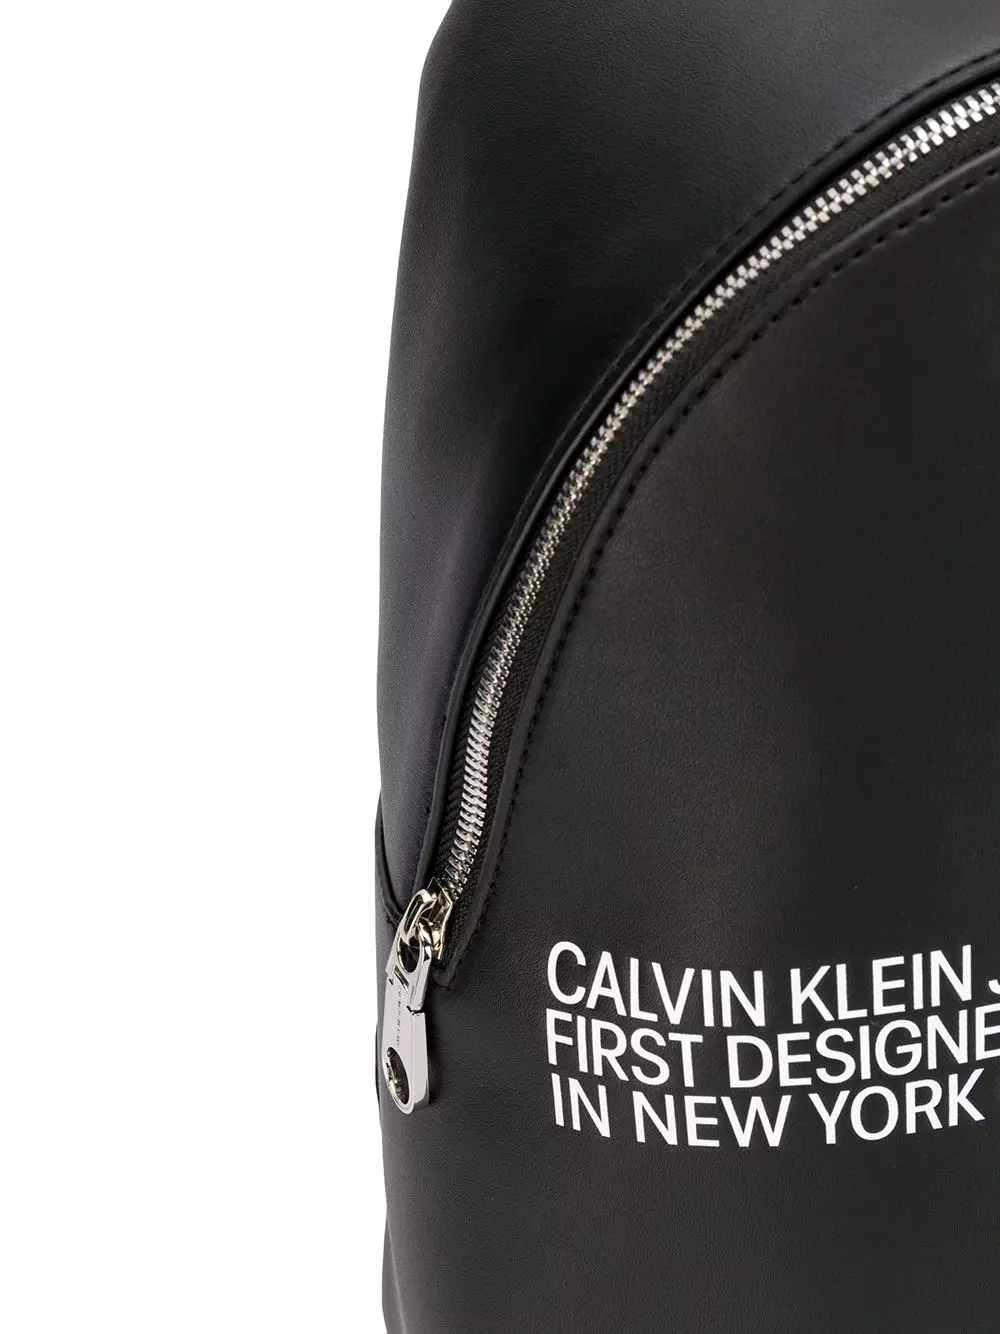 Calvin Klein Plecaki: Czarna kobieta i mężczyzna, skórzana czerwona, biała, żółta z workami monogrammów i innych kolorów - plecaki 15401_19